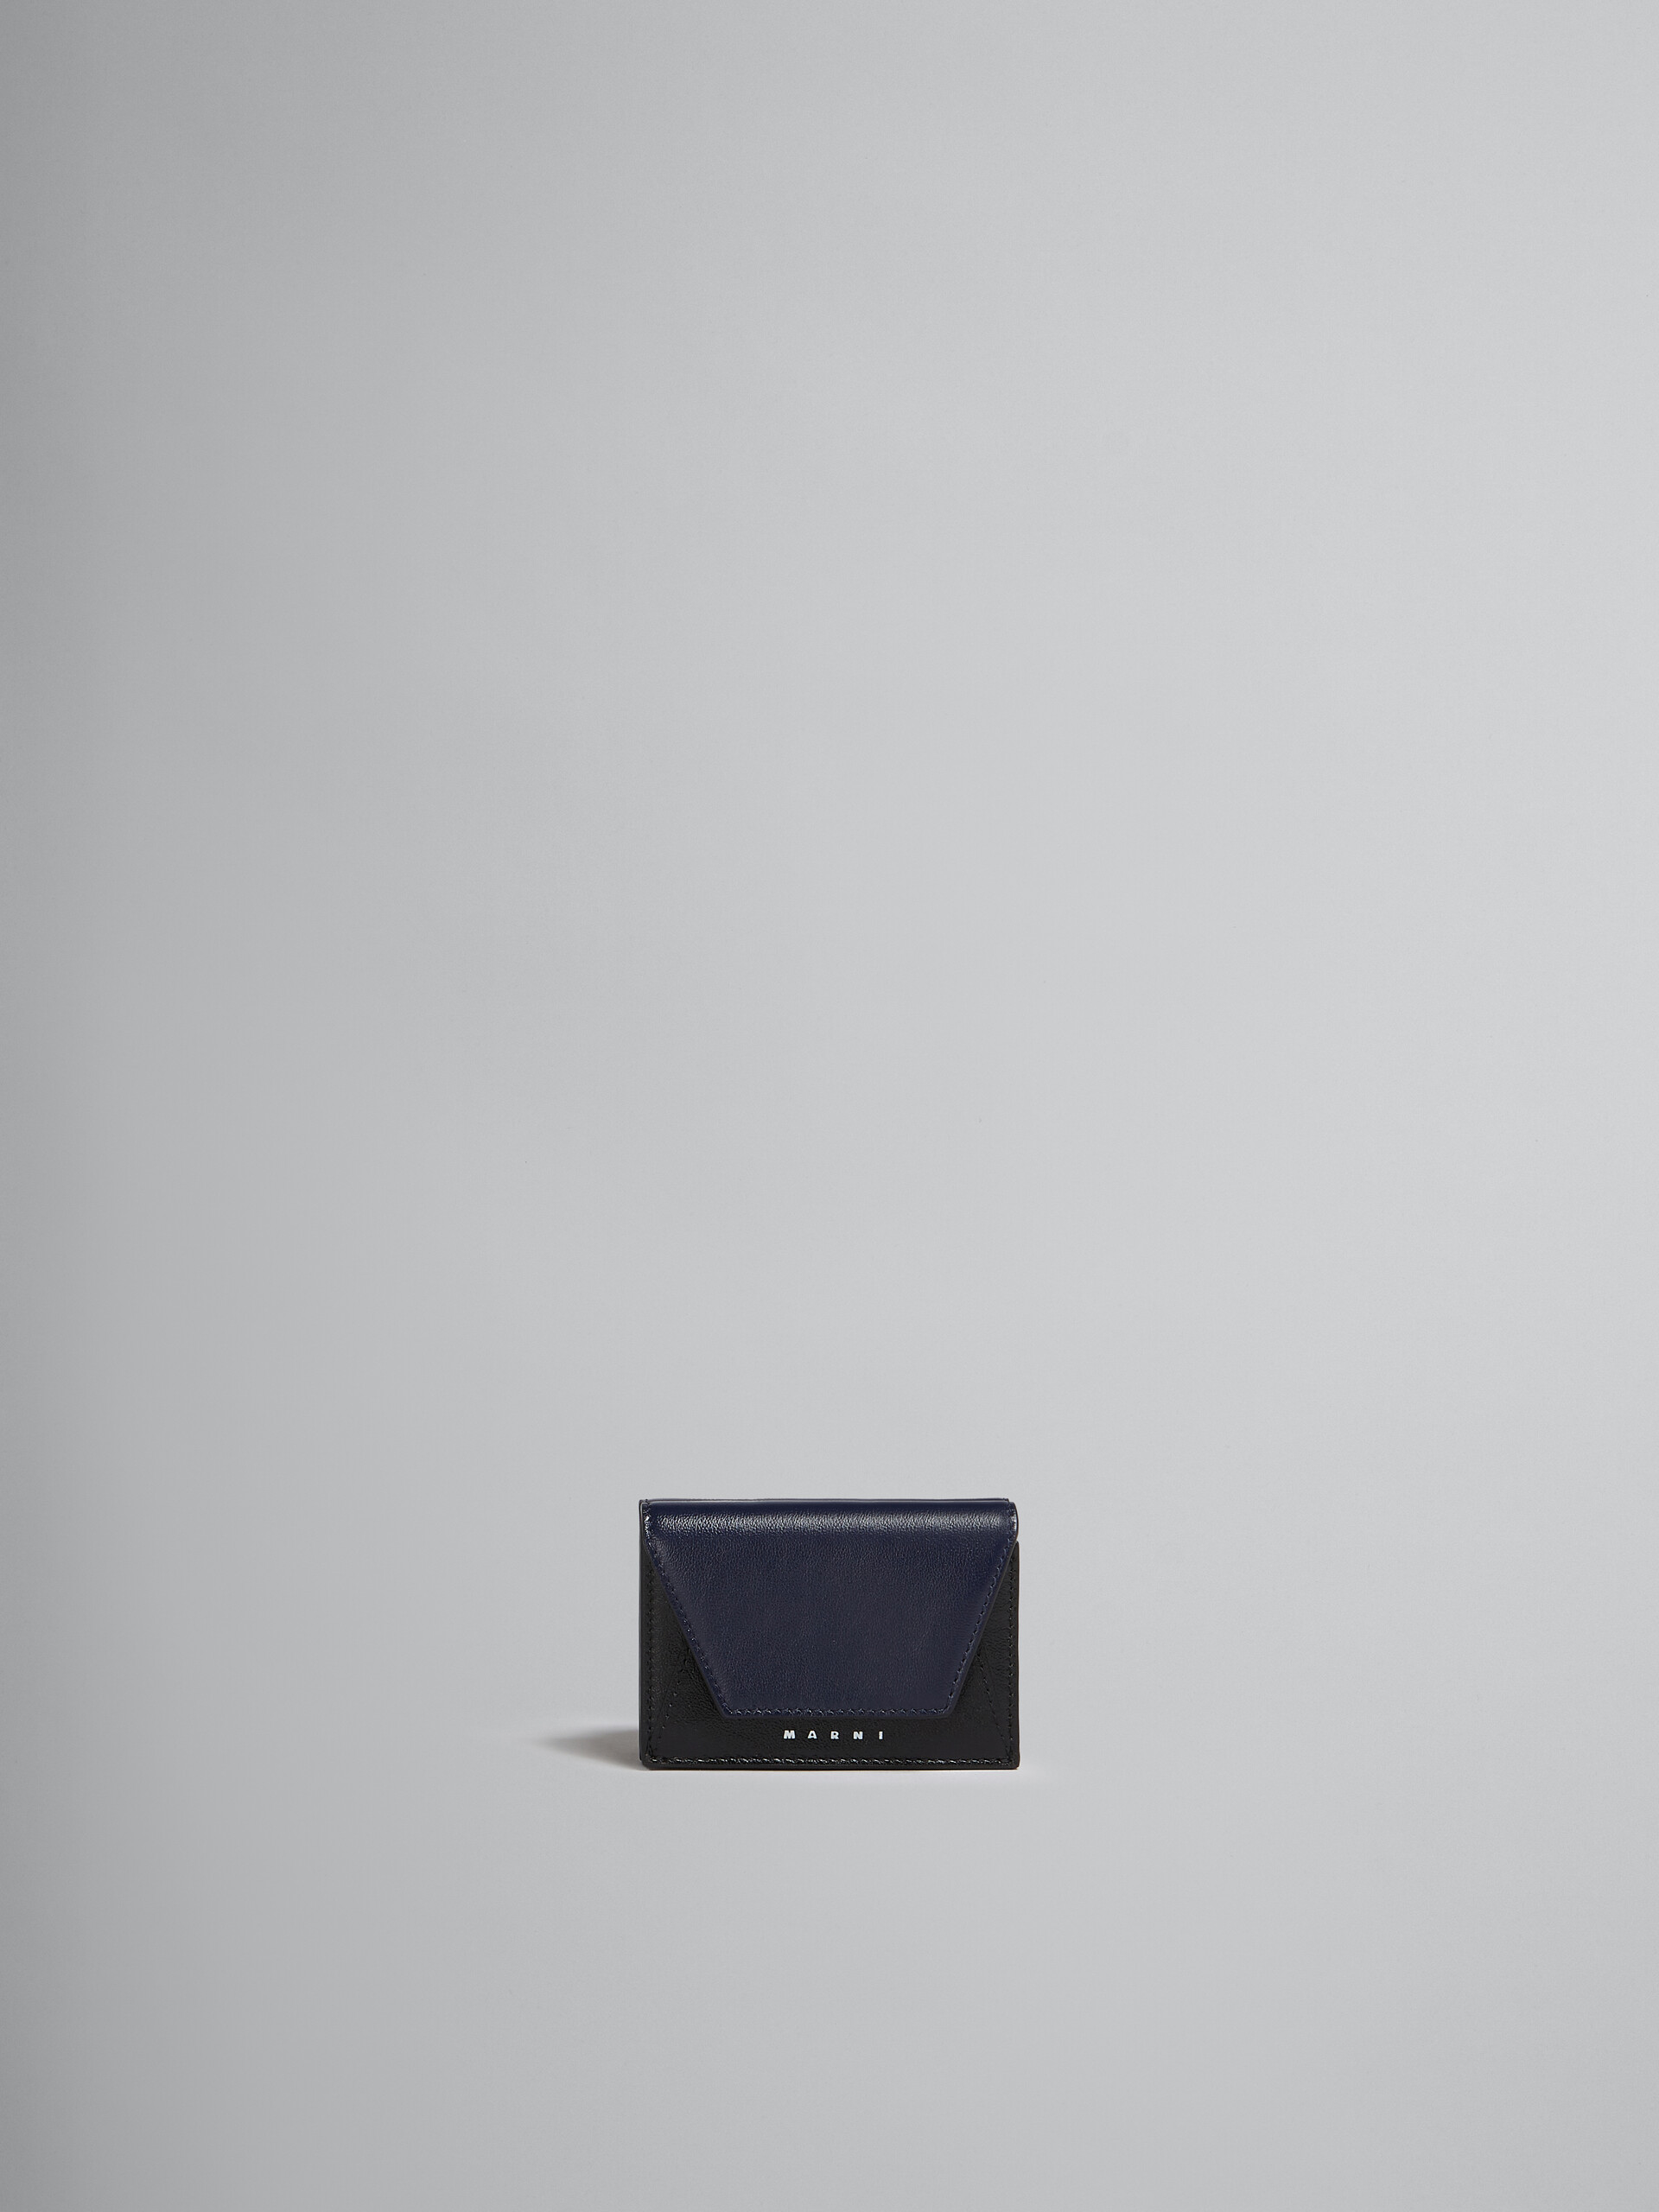 Portafoglio tri-fold in pelle blu e nera - Portafogli - Image 1